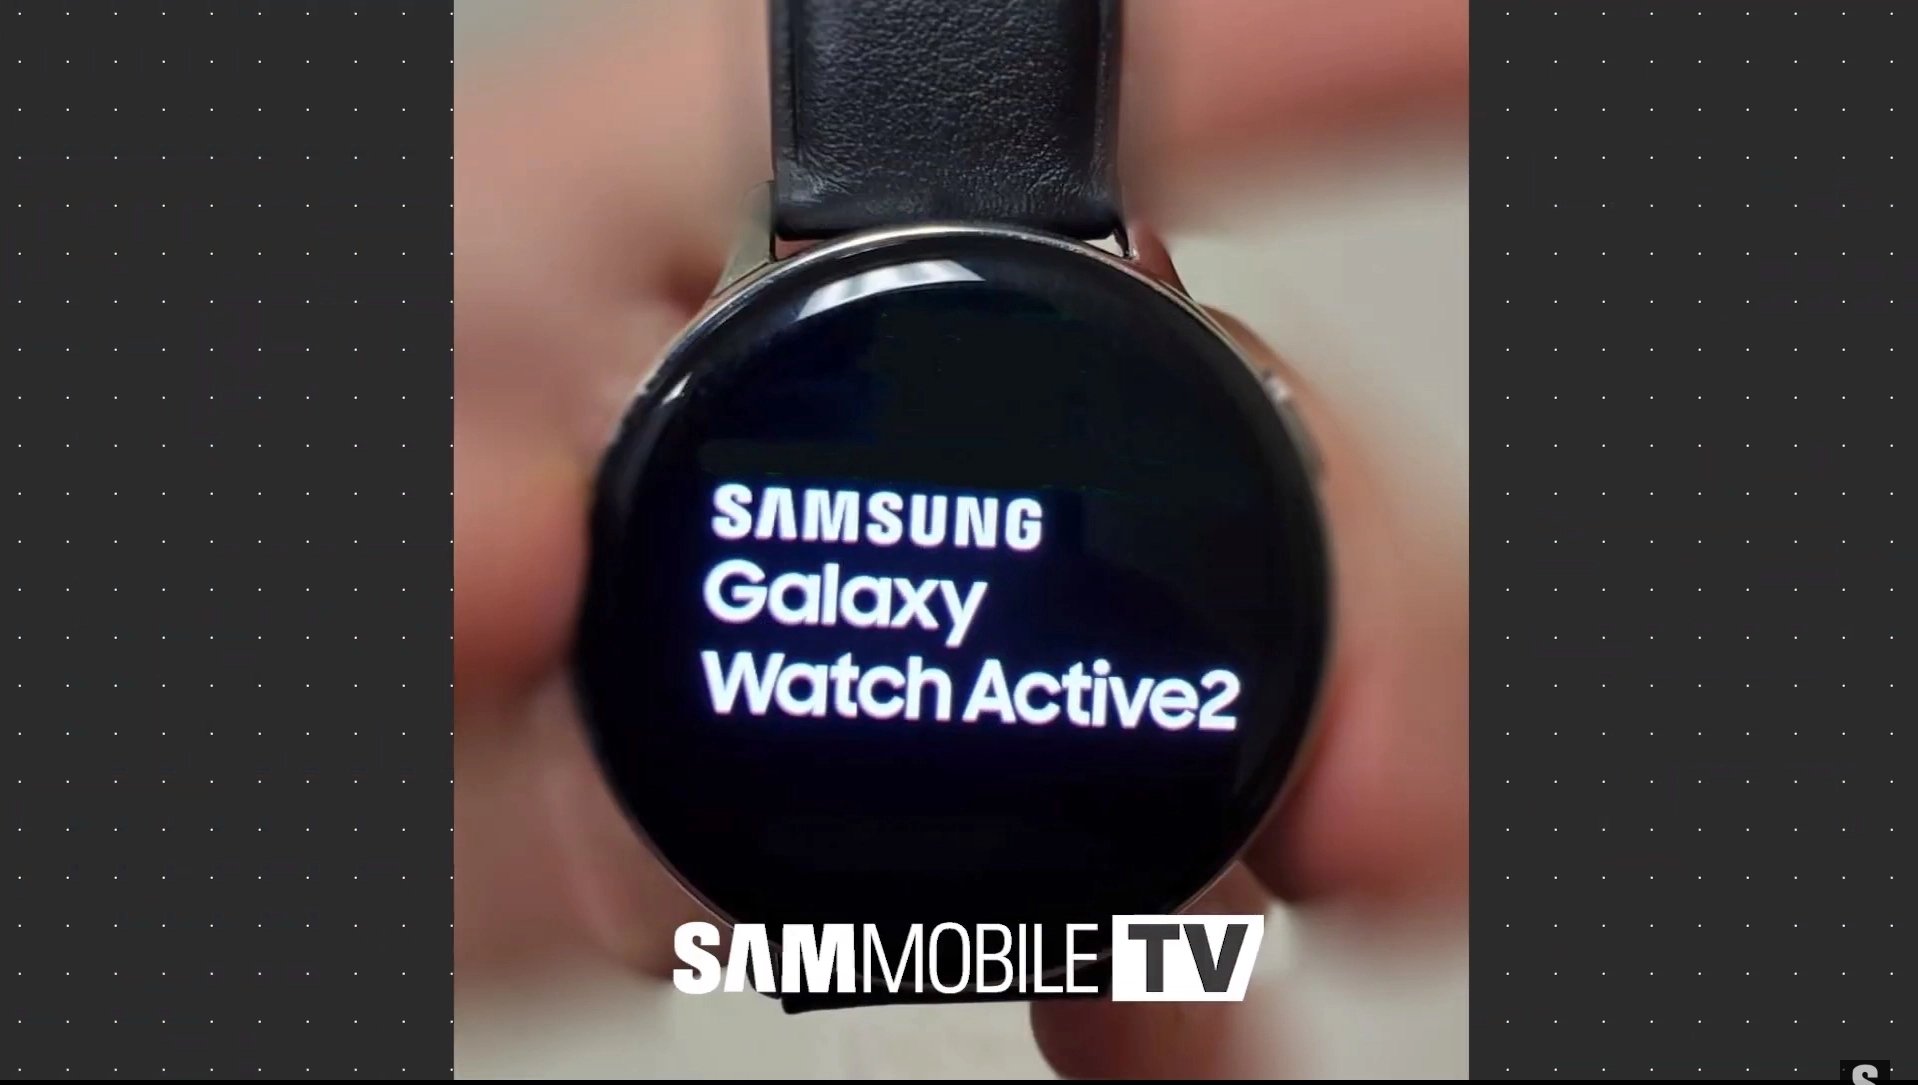 imagem do novo smartwatch